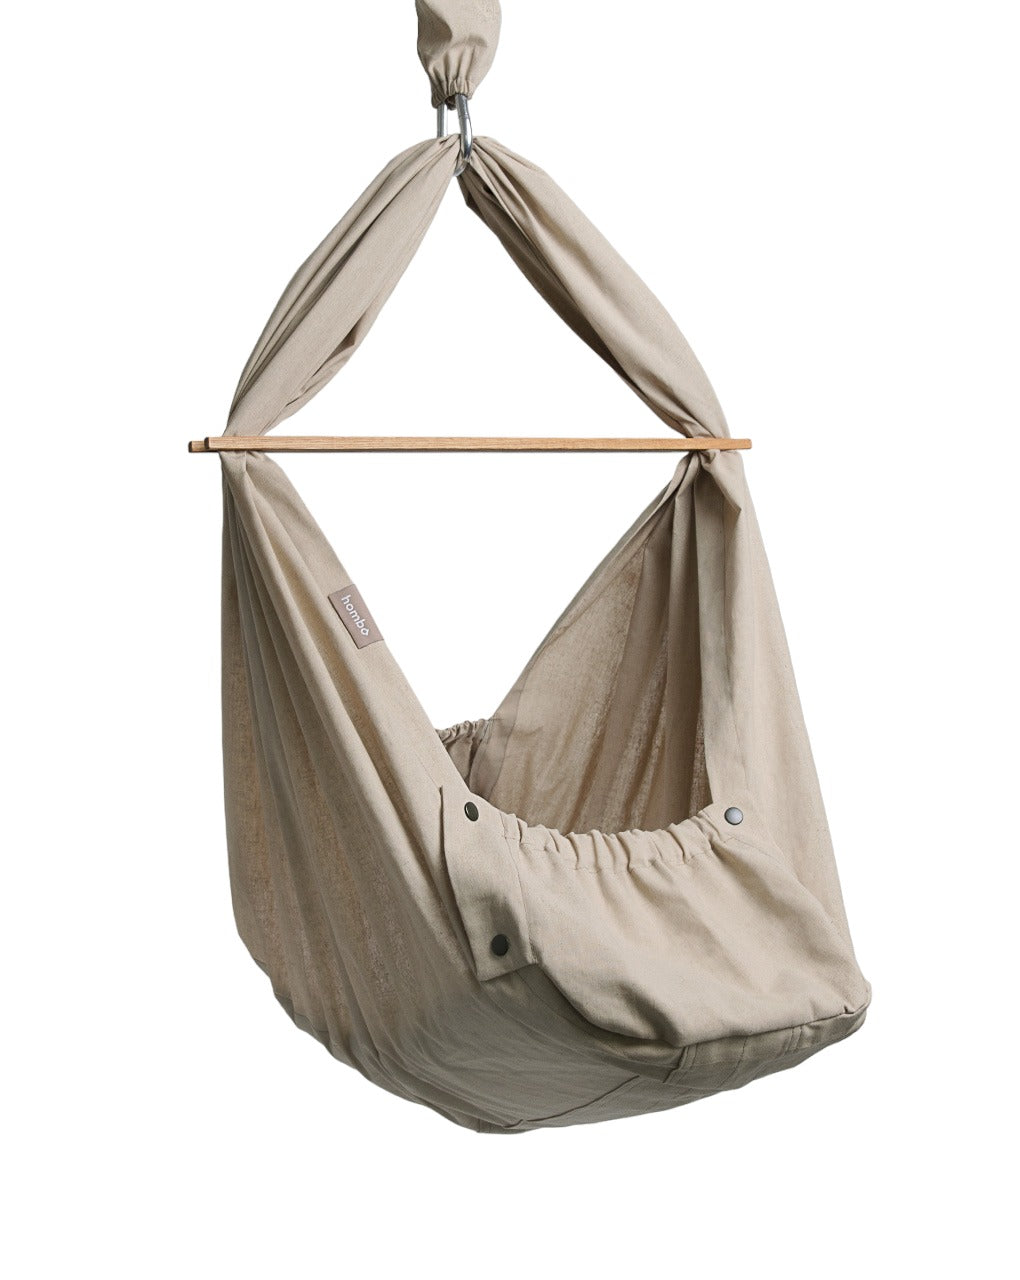 homba® baby hanging cradle linen beige